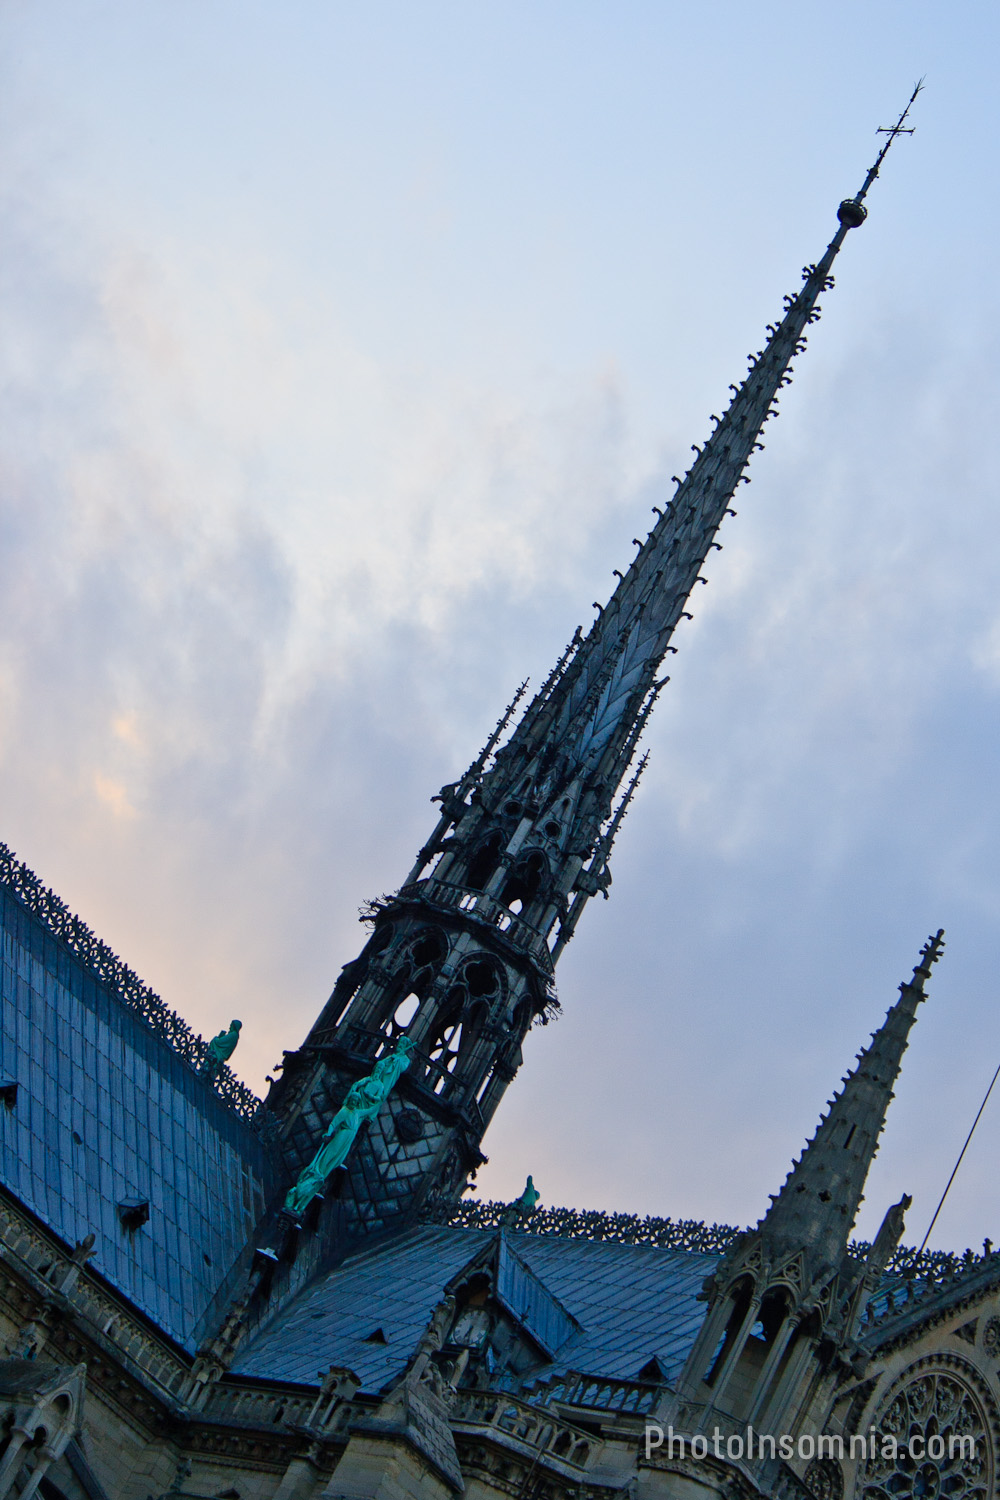 Cathedral de Notre Dame – 4 June 2011